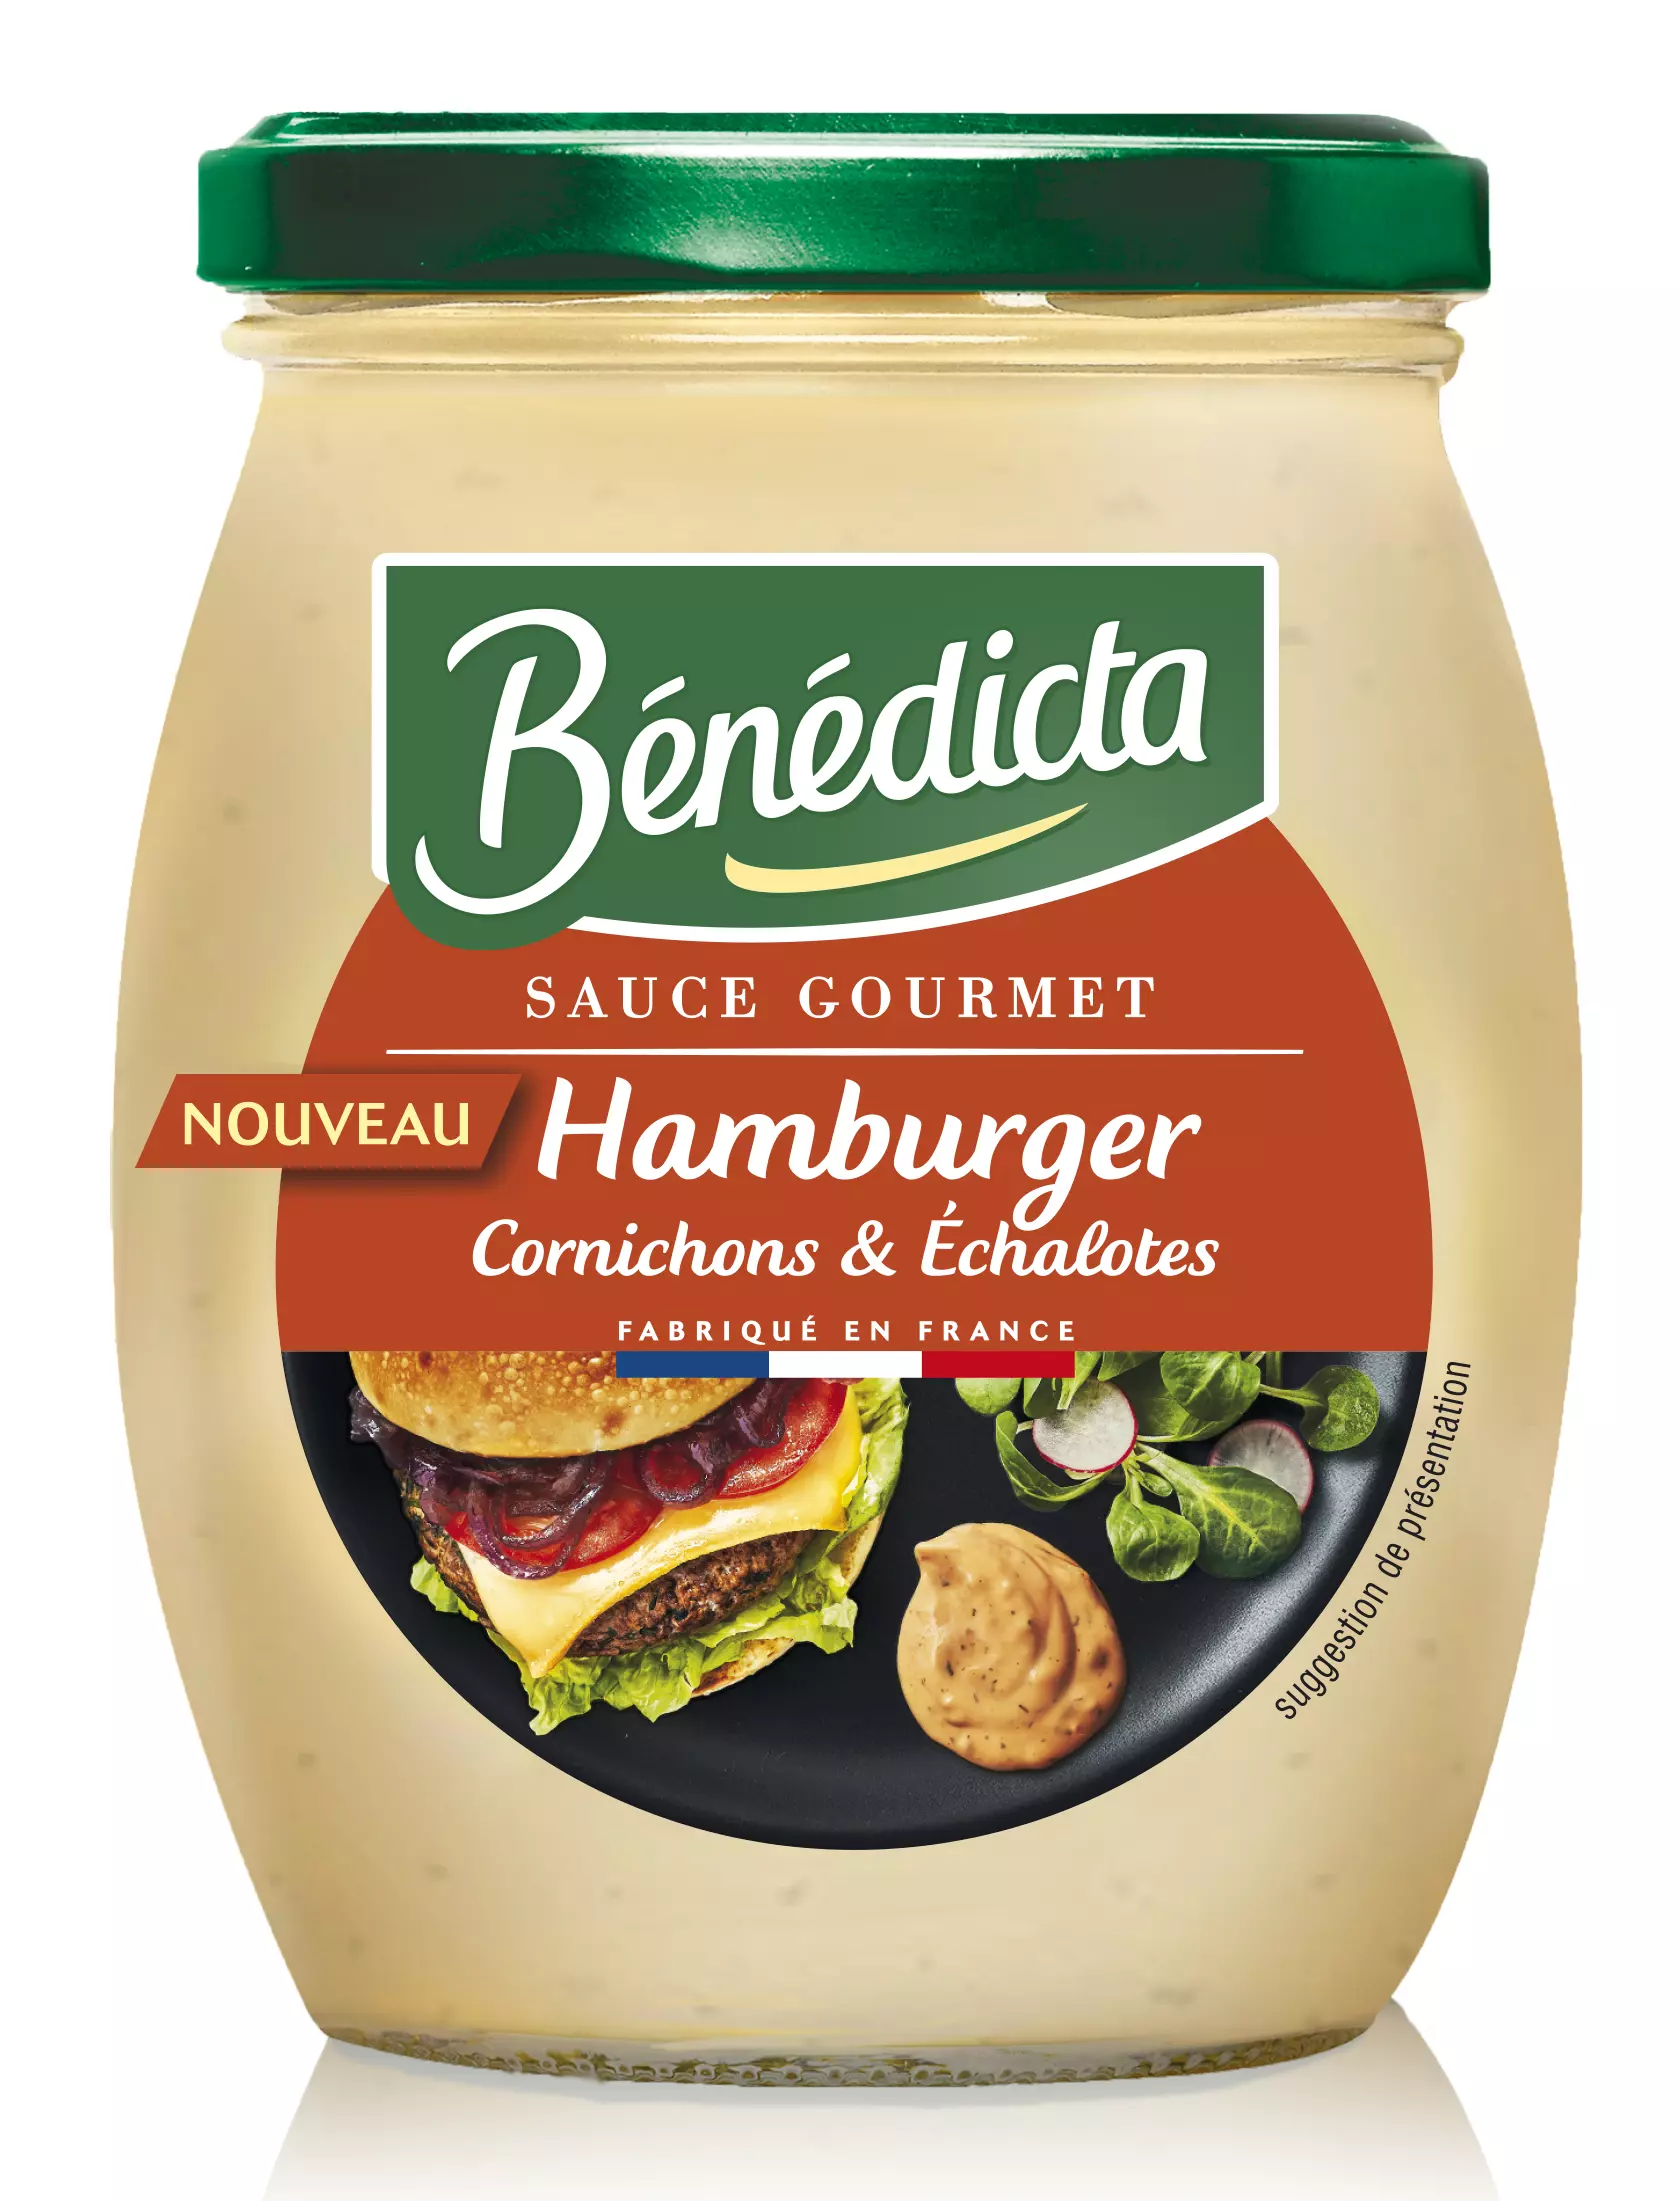 Benedicta Gourmet sauce Hamburger 260g